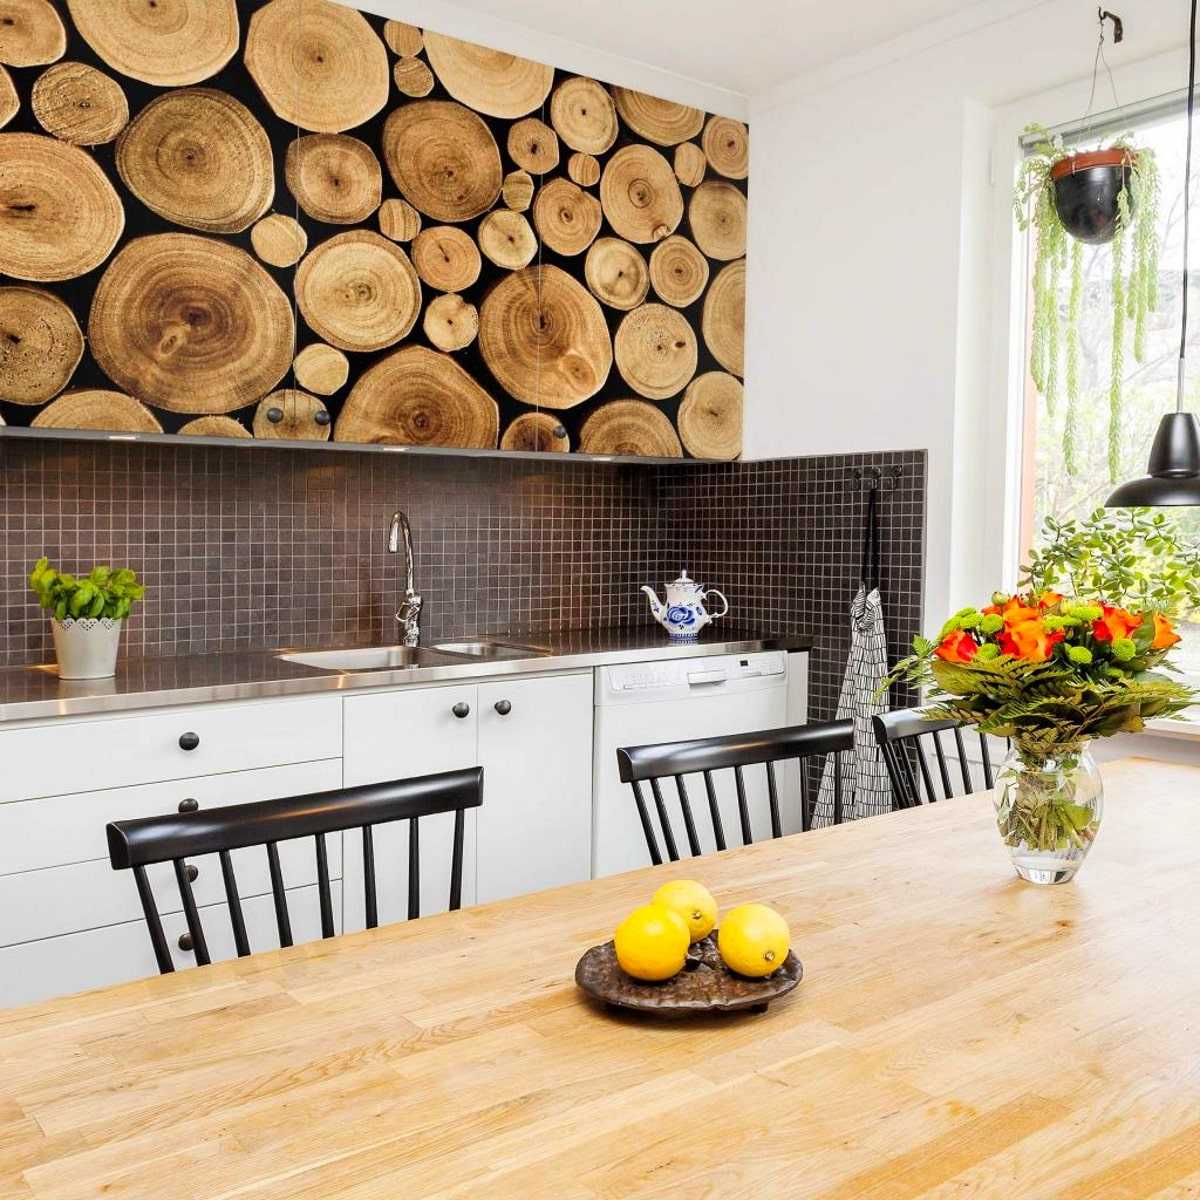 Варианты отделки стен на кухне (74 фото): дизайн и выбор отделочного материала. чем лучше отделать стены кухни в квартире? современные идеи оформления интерьера